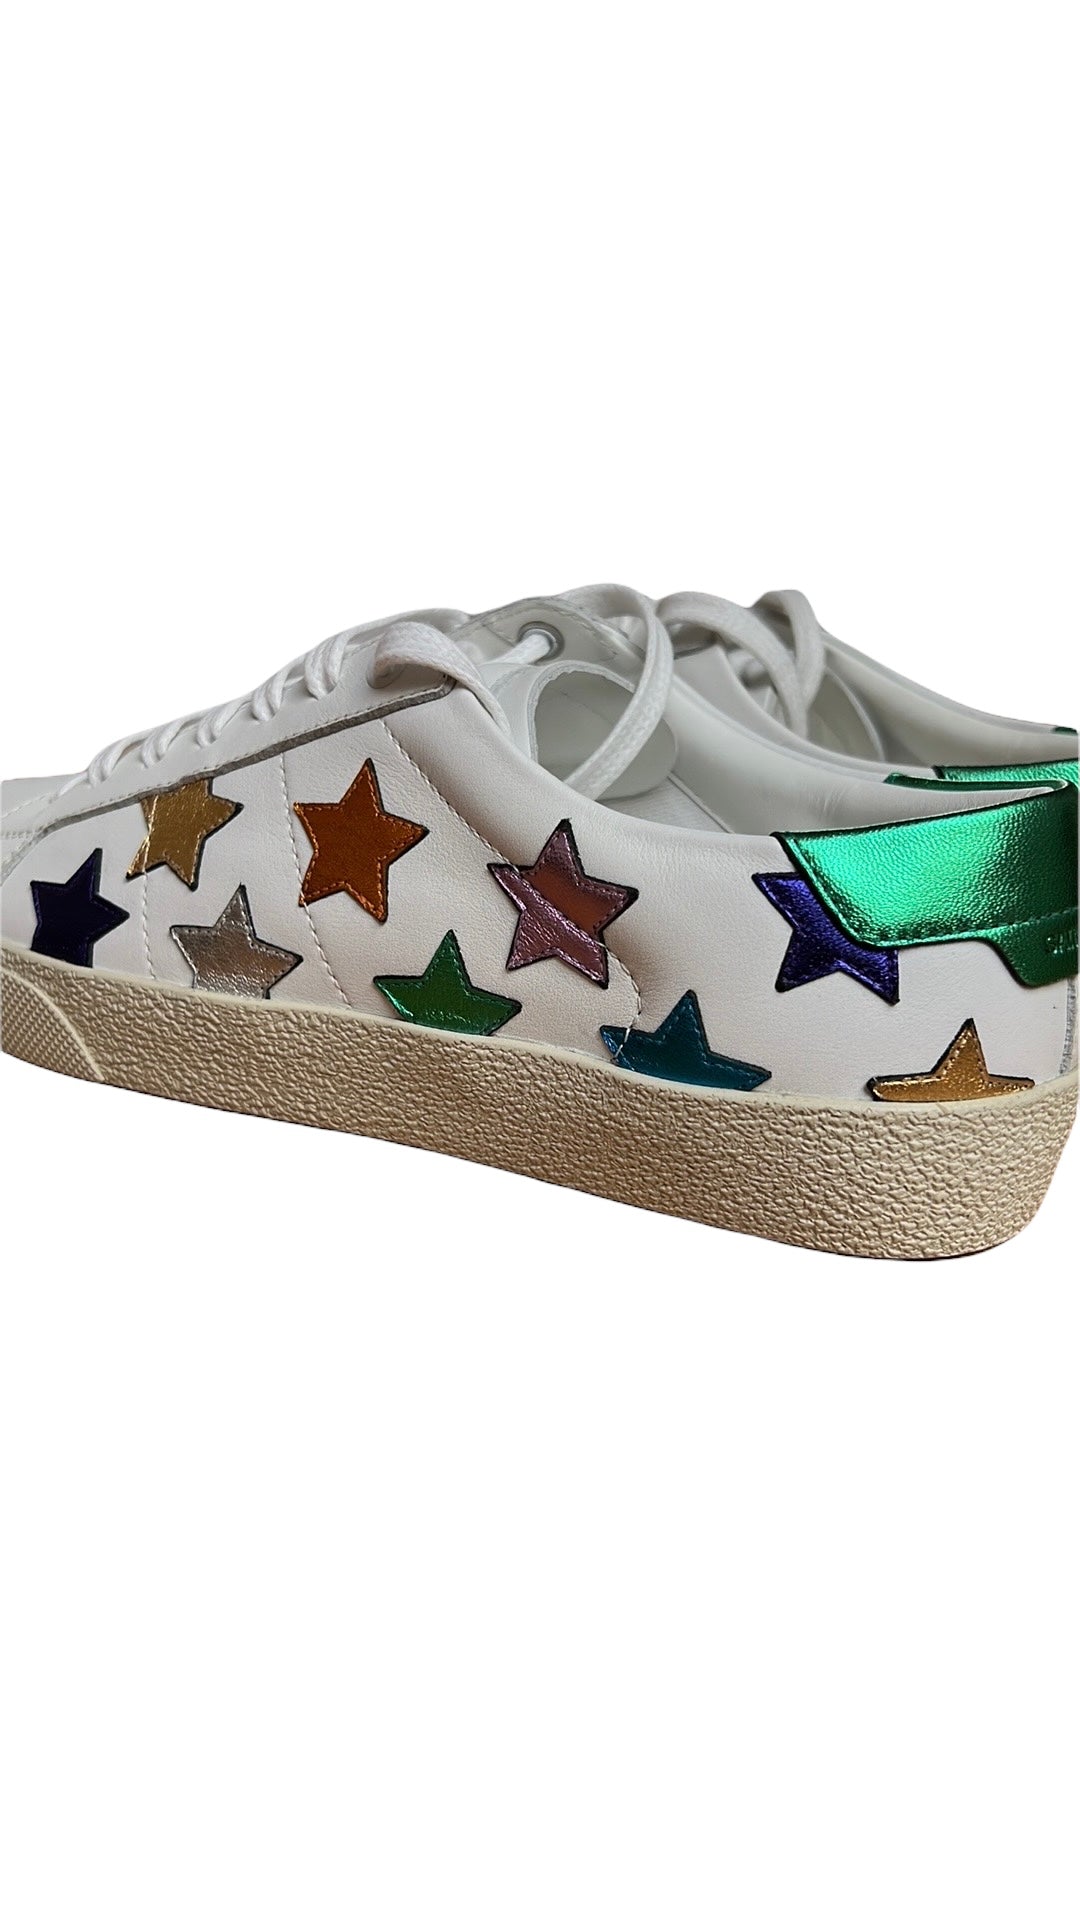 White & Multicolor Sneakers - 7.5